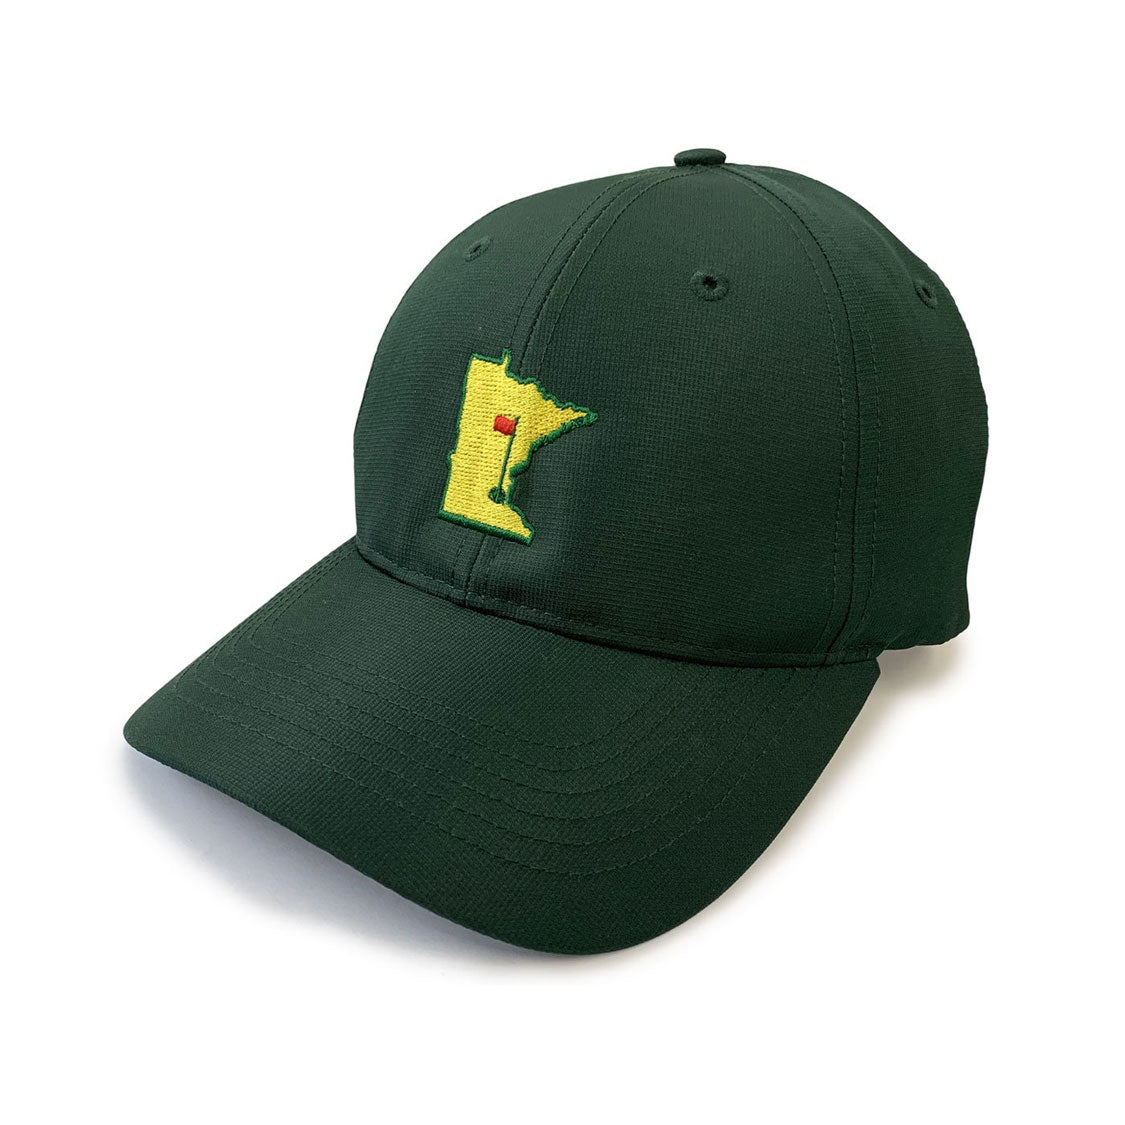 Mean Green golf cap